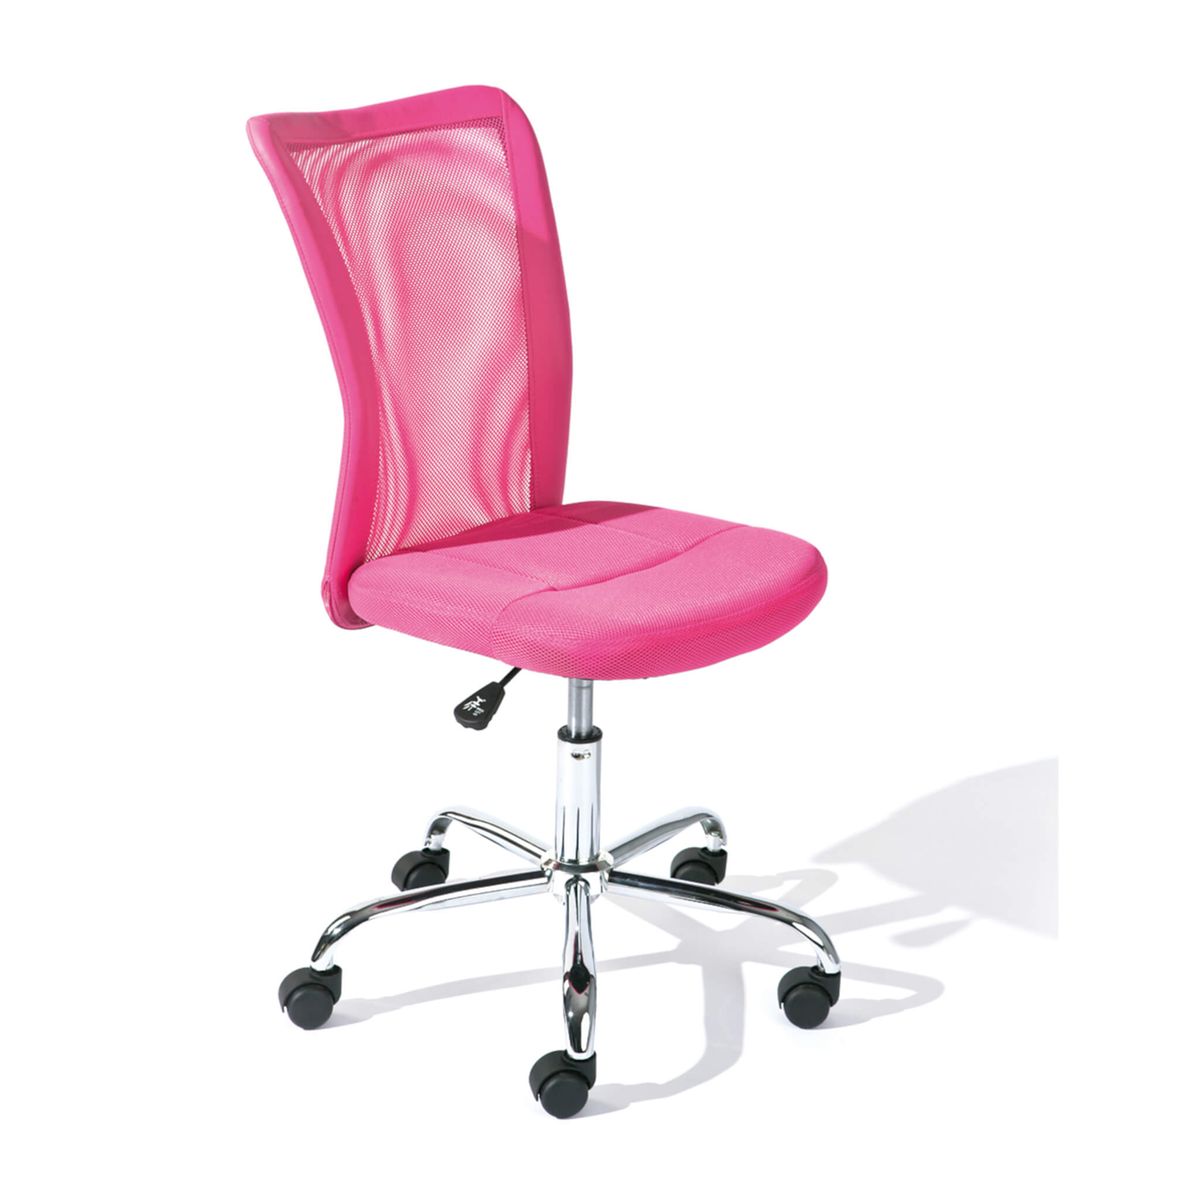 Chaise de bureau design enfant rose steevy - Conforama